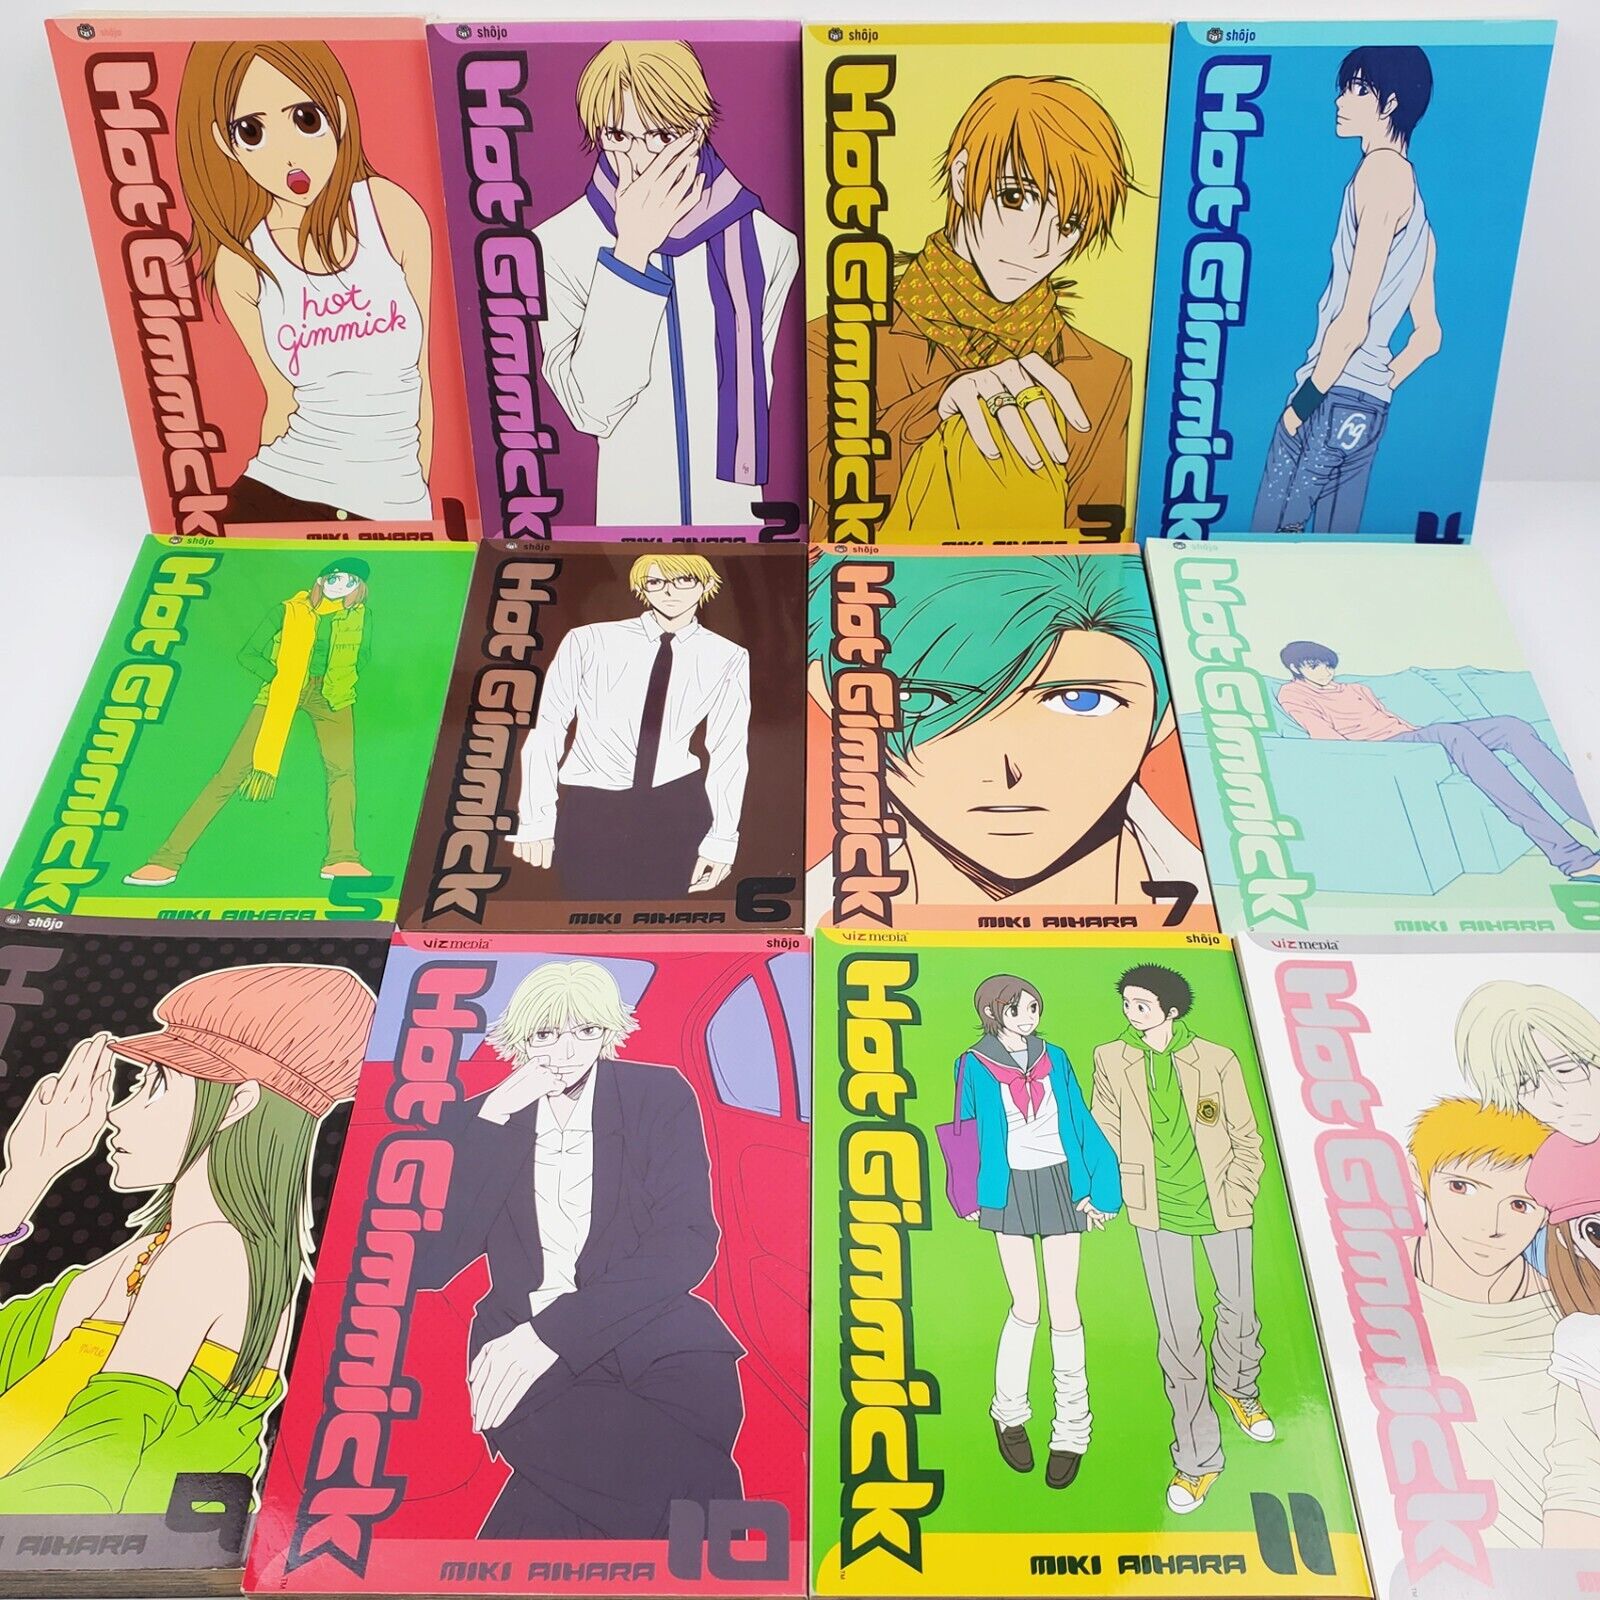 Hot Gimmick Manga Miki Aihara Complete Full 1-12 Set VIZ Shojo Edition Books